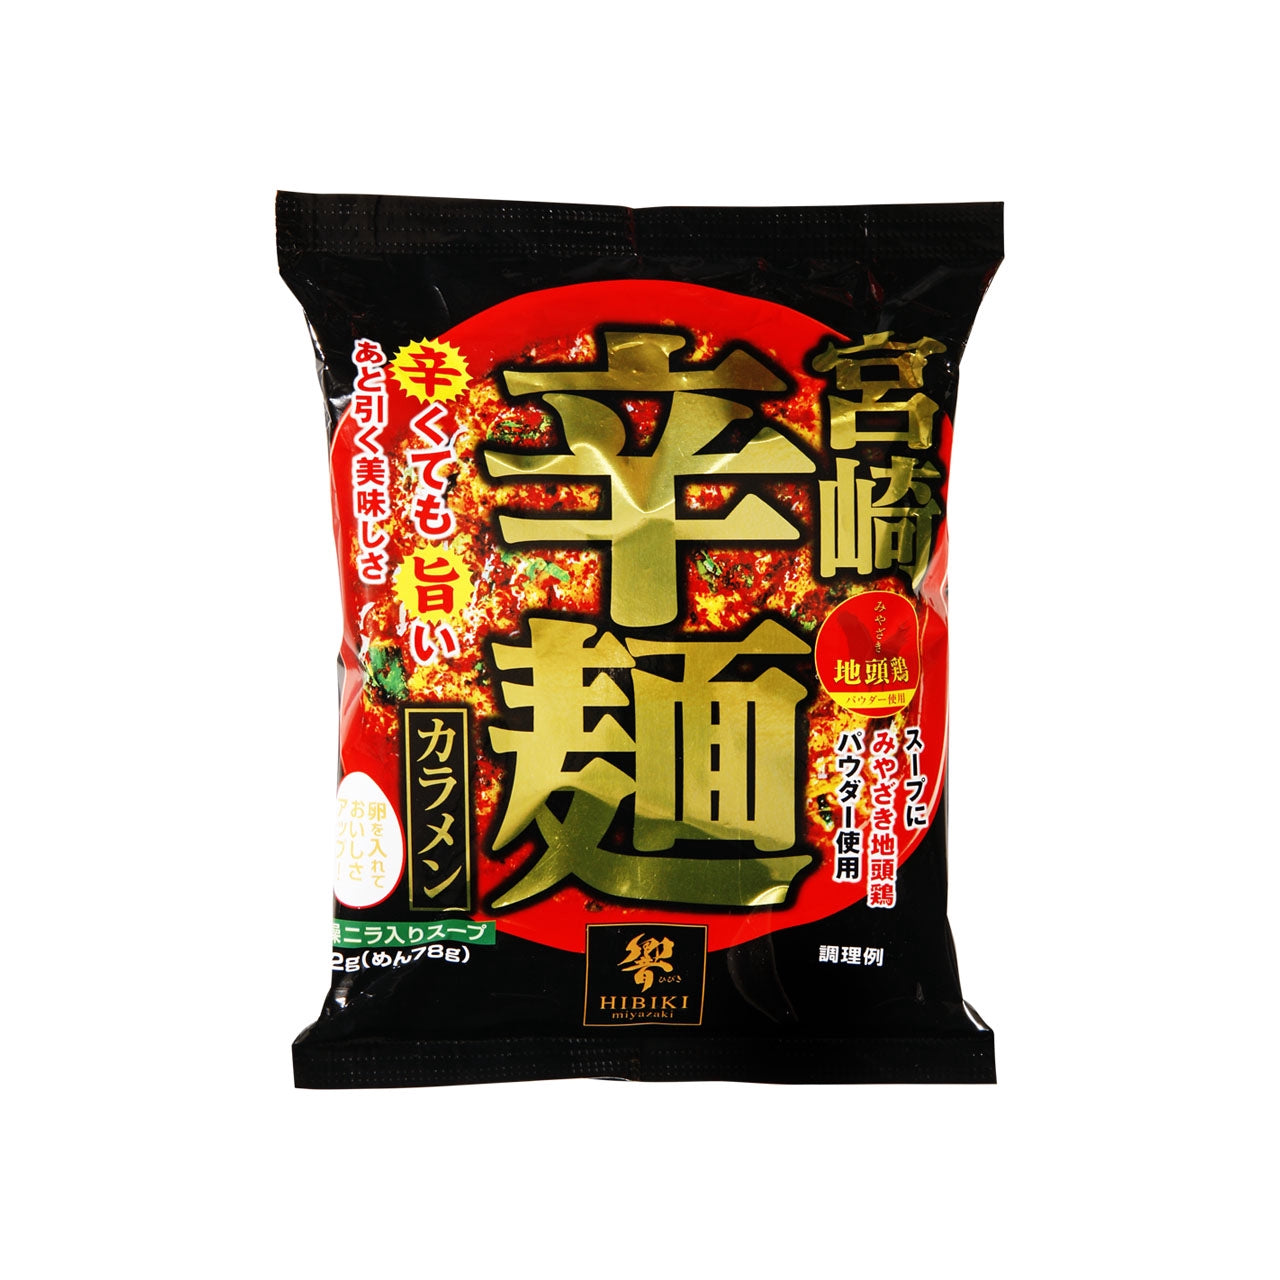 宮崎辛麺即席麺1食 – トライアルネットスーパー ビジネス